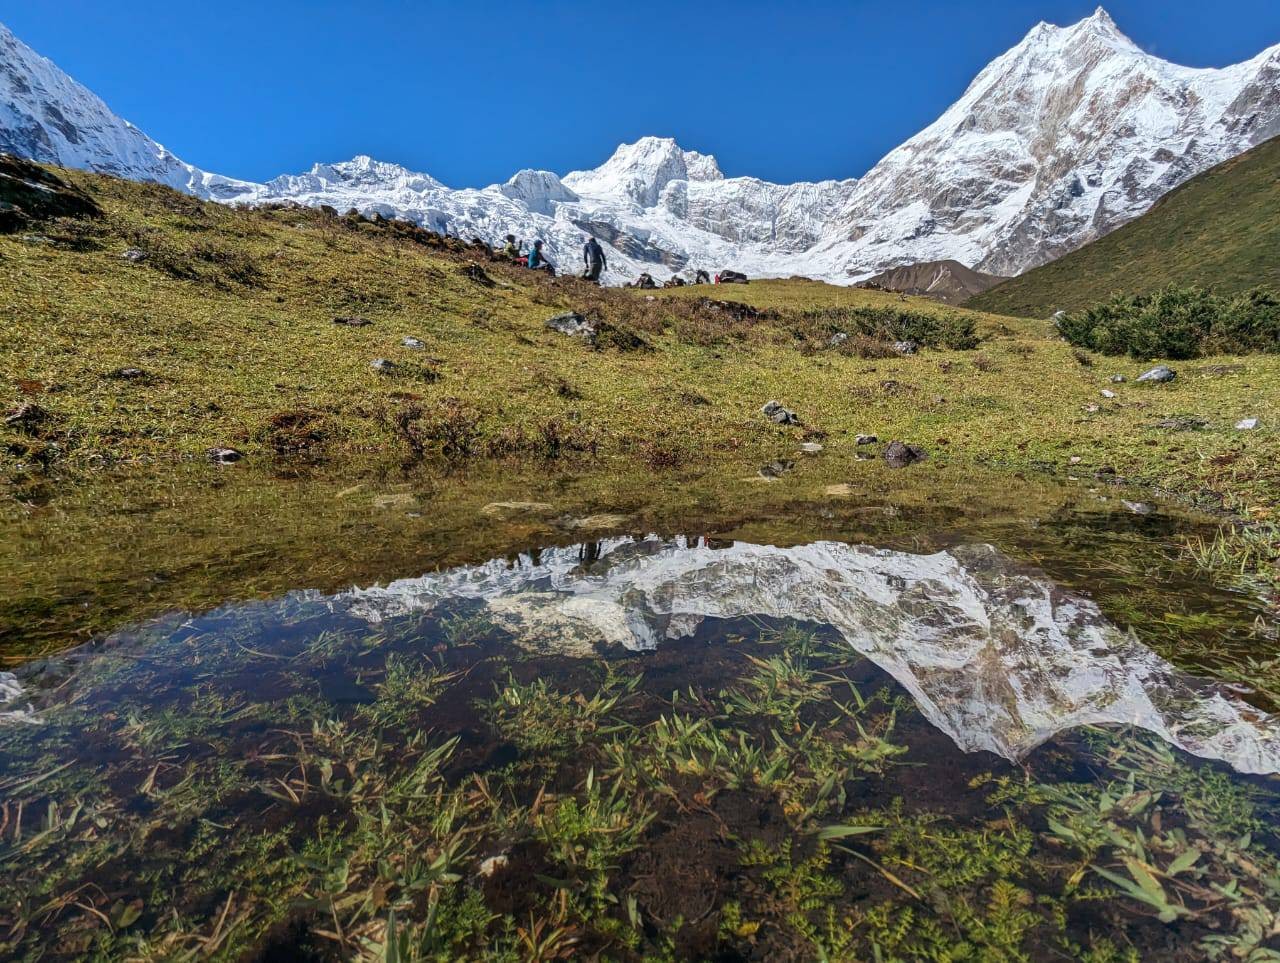 trekking with peak climbing in Nepal